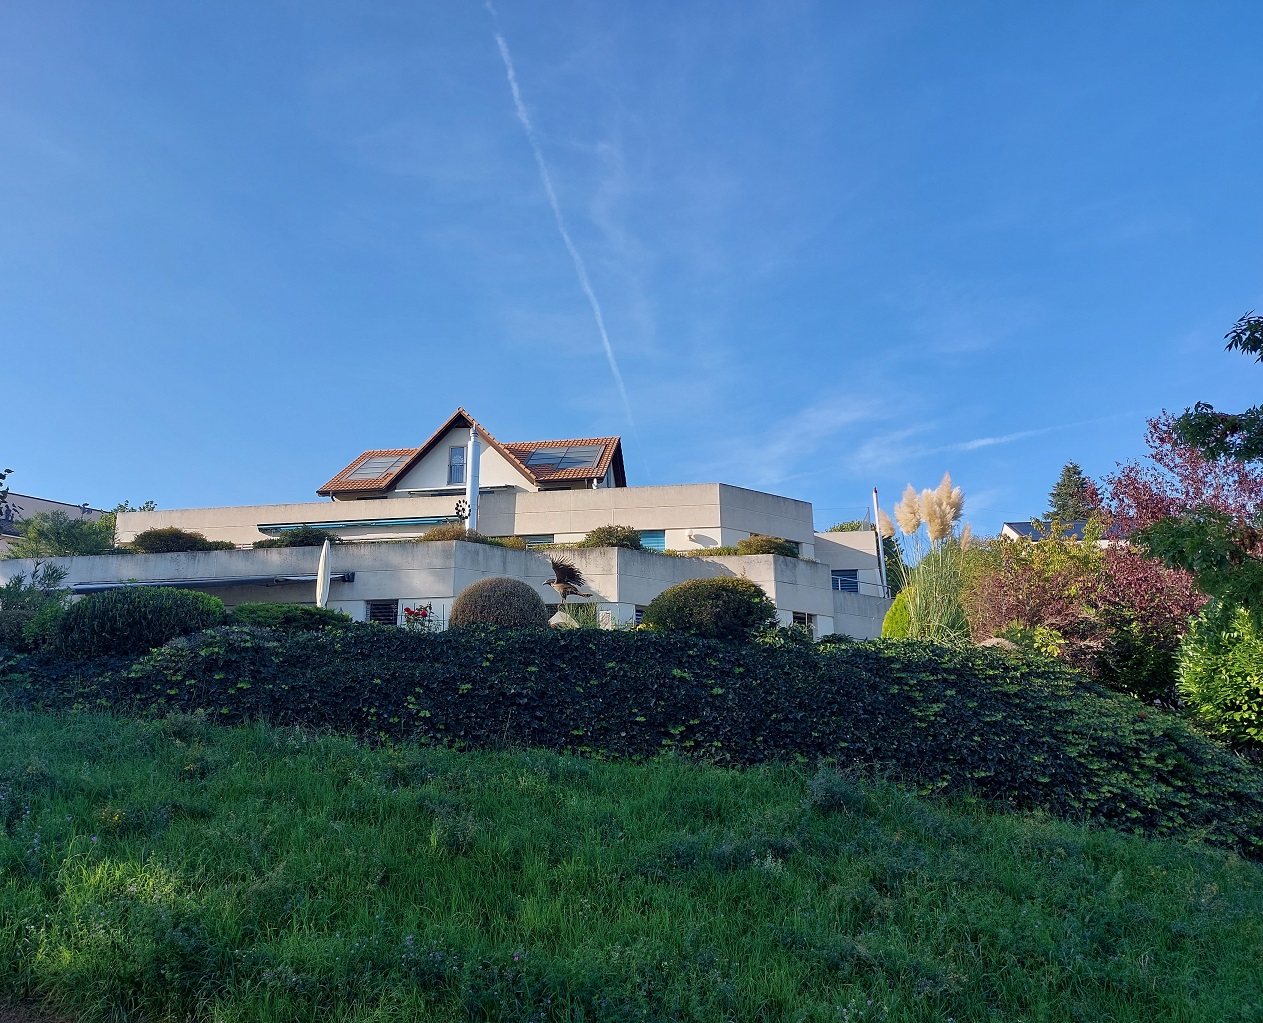 Maison à vendre dans le canton de Neuchâtel sur Corcelles Cormondrèche